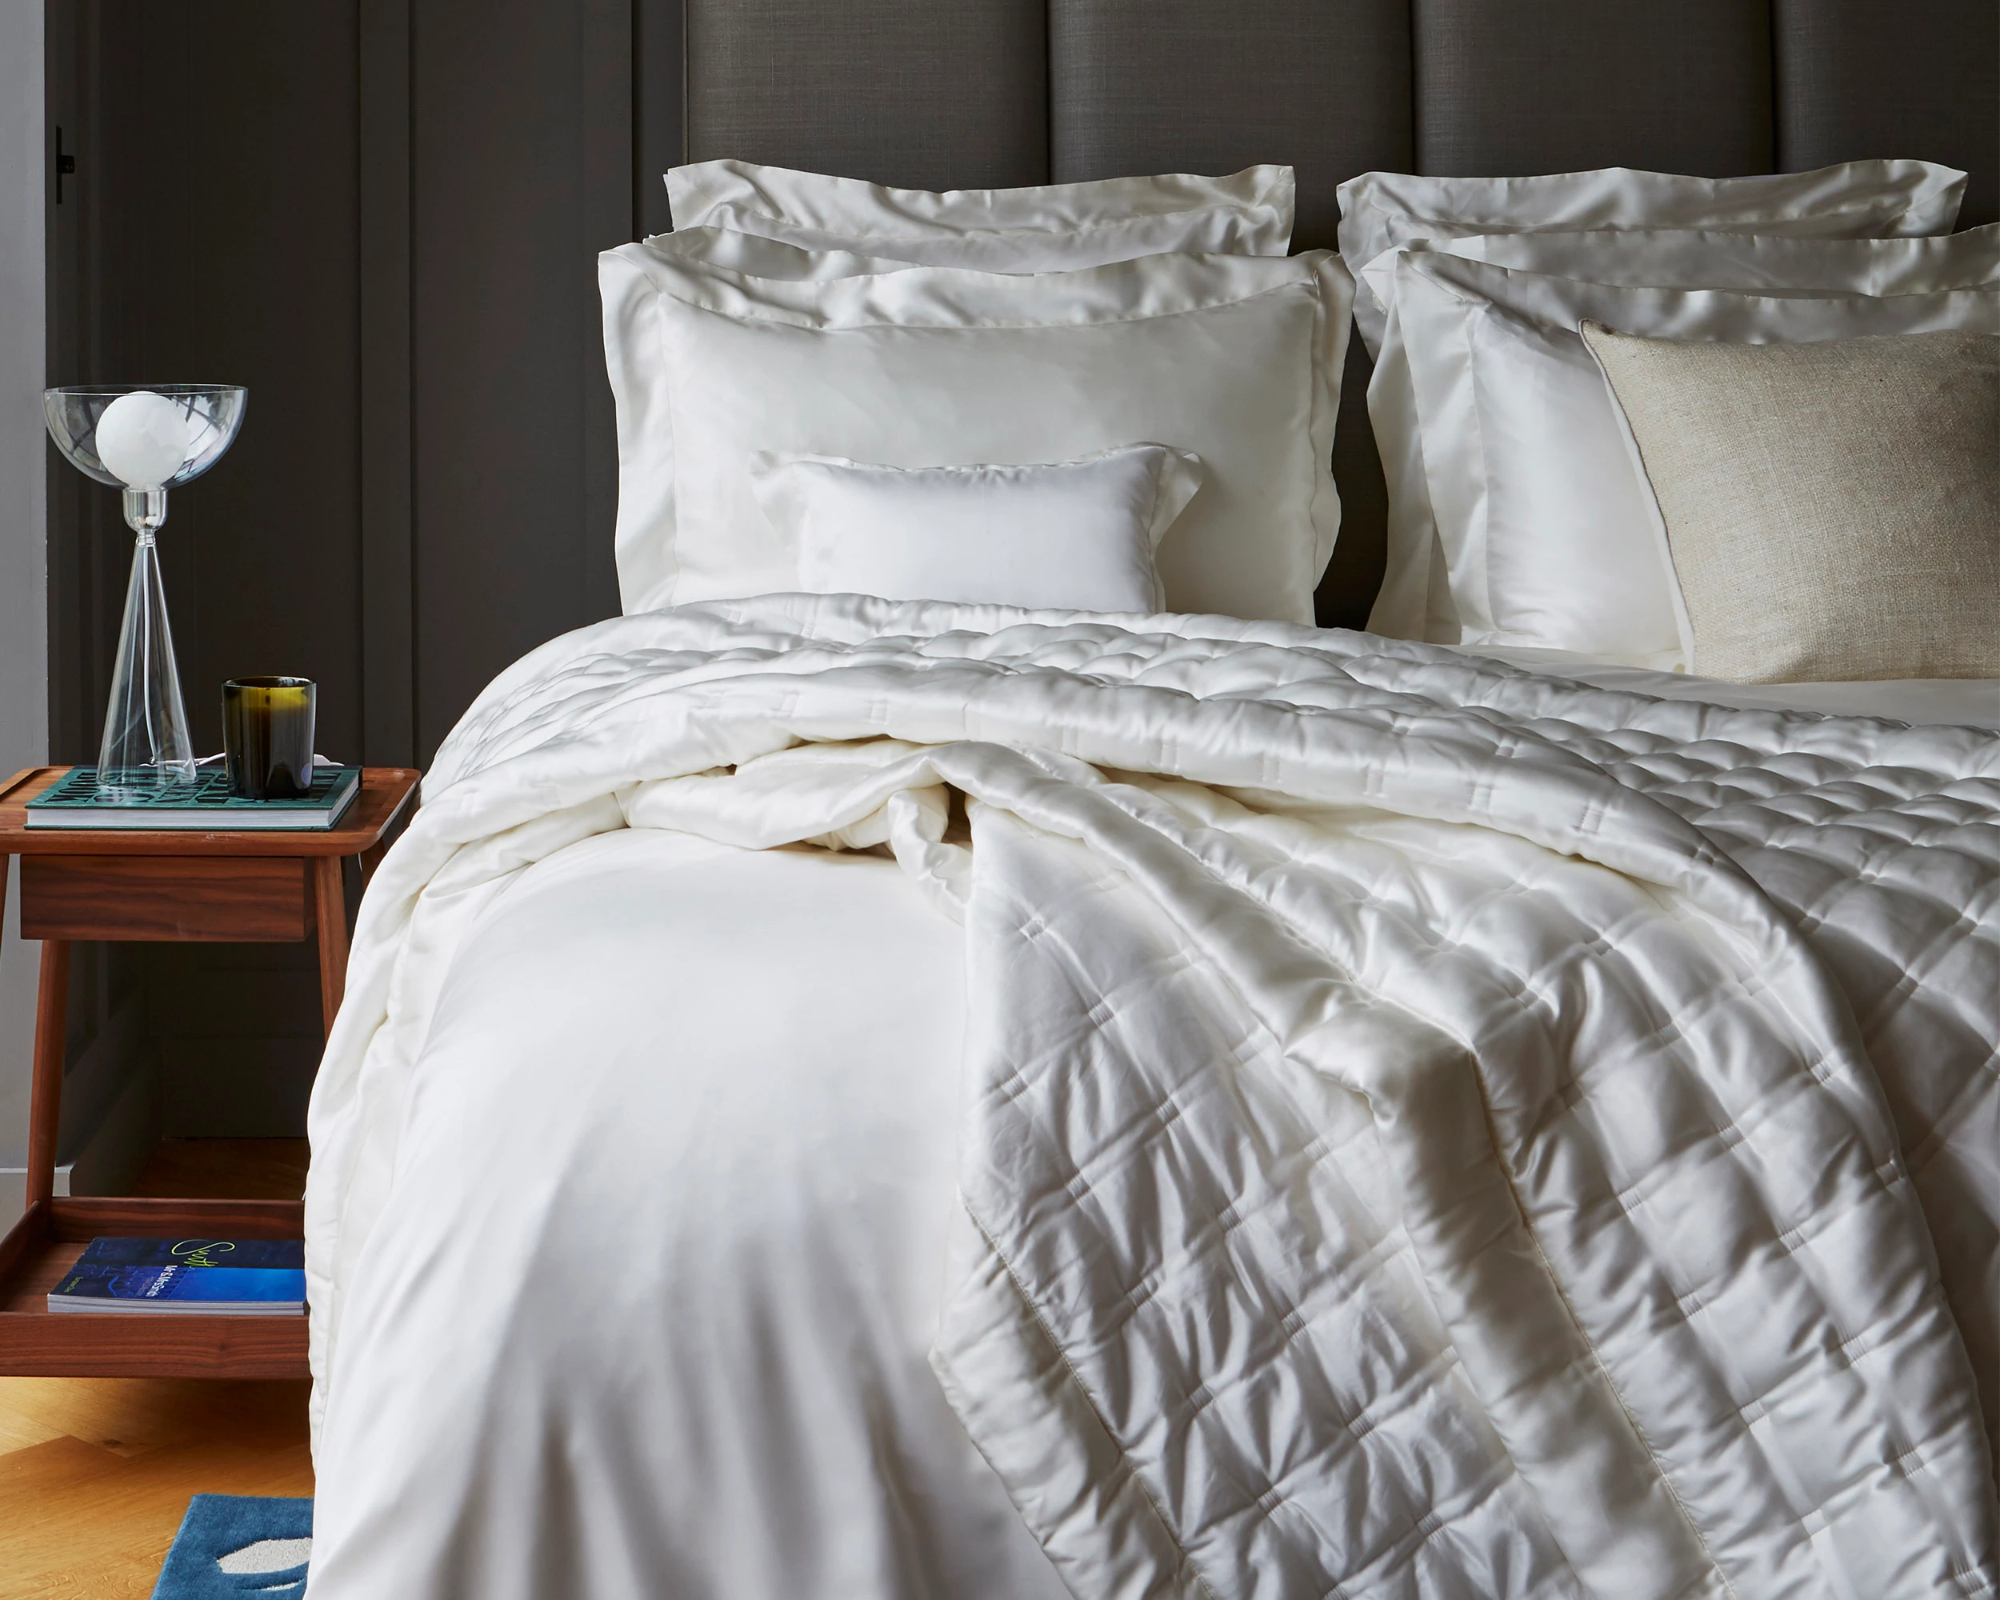 Gingerlily - Bed linen set SILK ivory - 240x220 cm + 2 slopen 65x65 cm - ivory